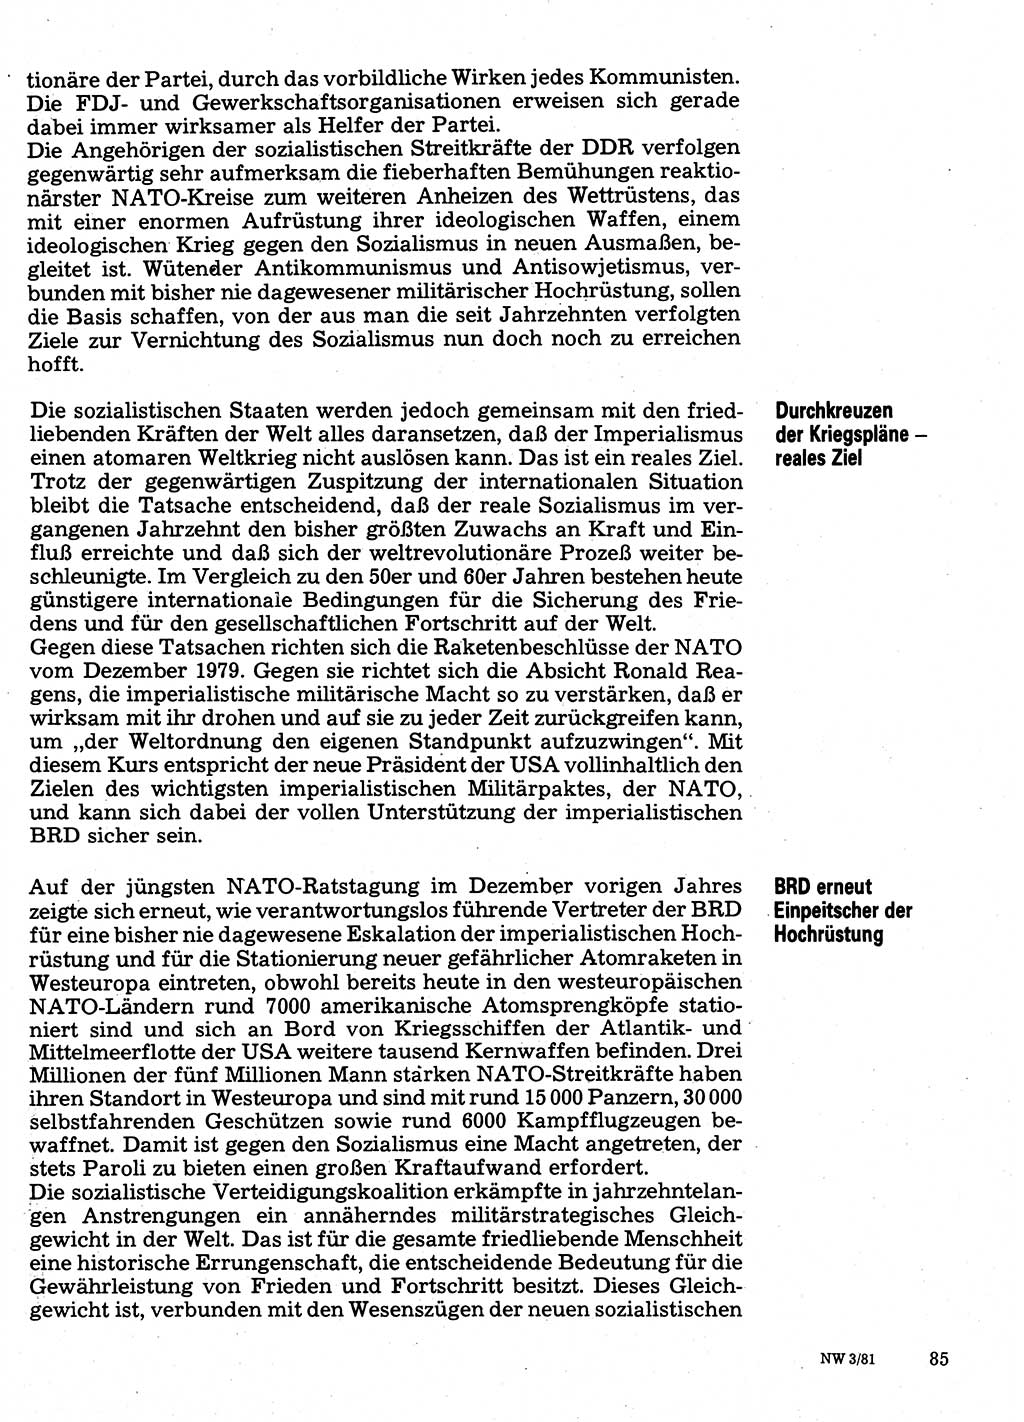 Neuer Weg (NW), Organ des Zentralkomitees (ZK) der SED (Sozialistische Einheitspartei Deutschlands) für Fragen des Parteilebens, 36. Jahrgang [Deutsche Demokratische Republik (DDR)] 1981, Seite 85 (NW ZK SED DDR 1981, S. 85)